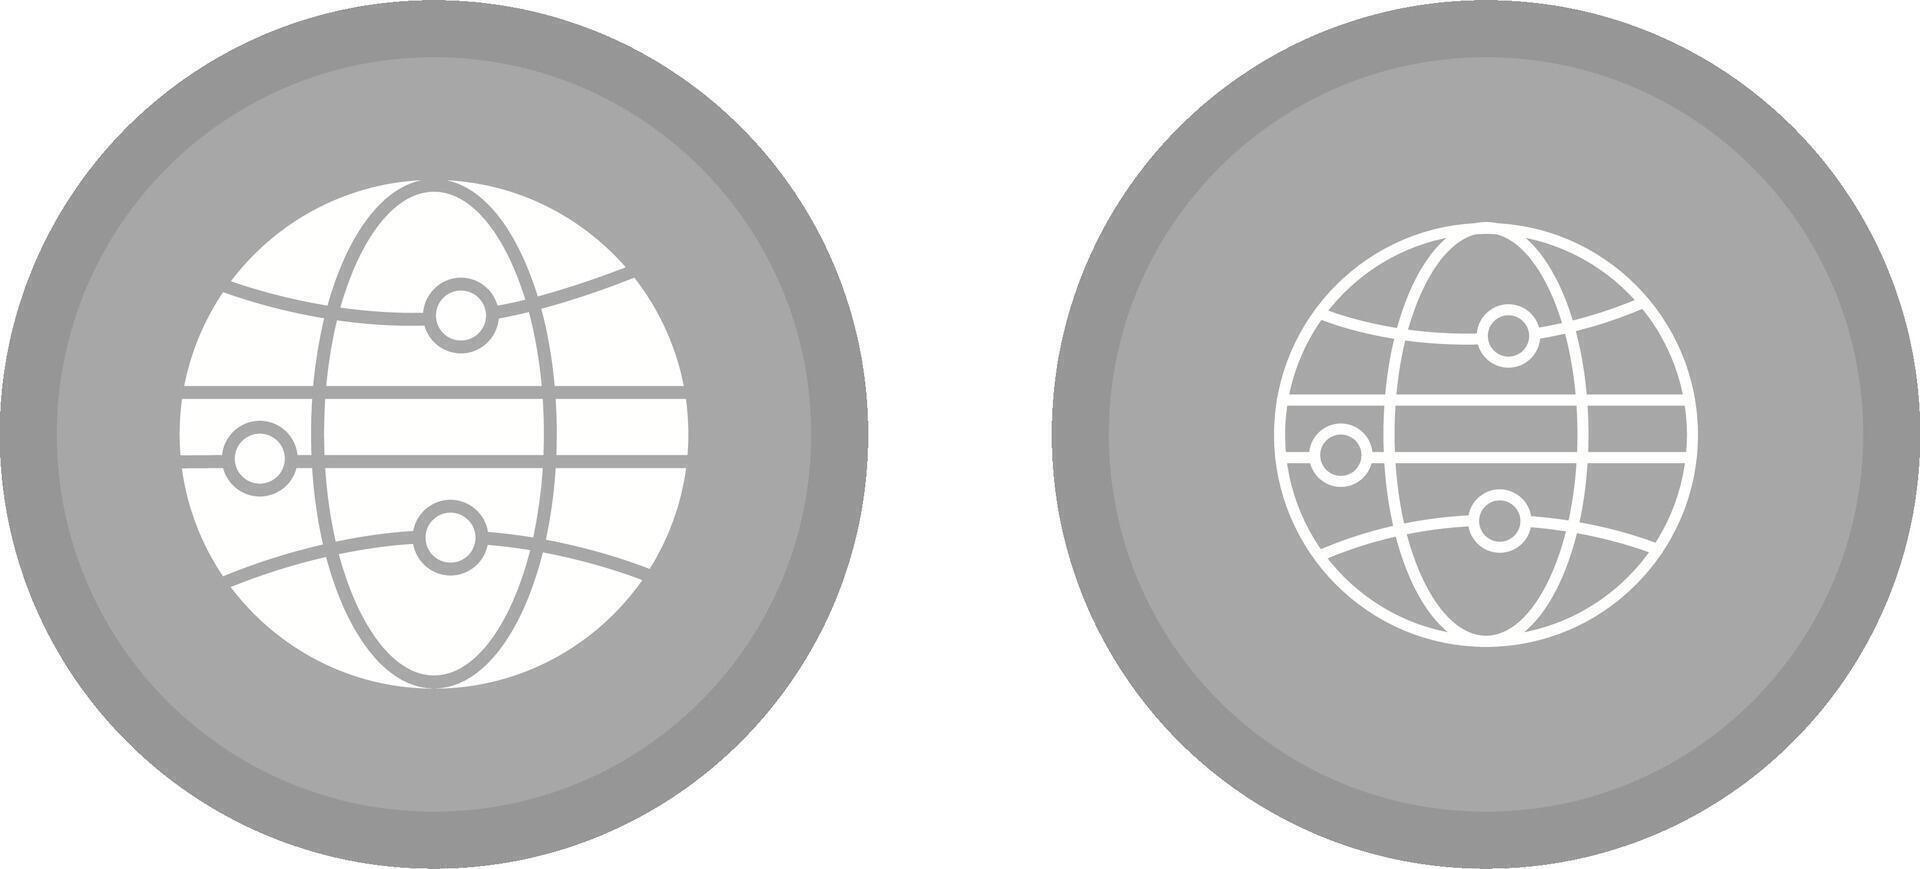 Globe III Vector Icon